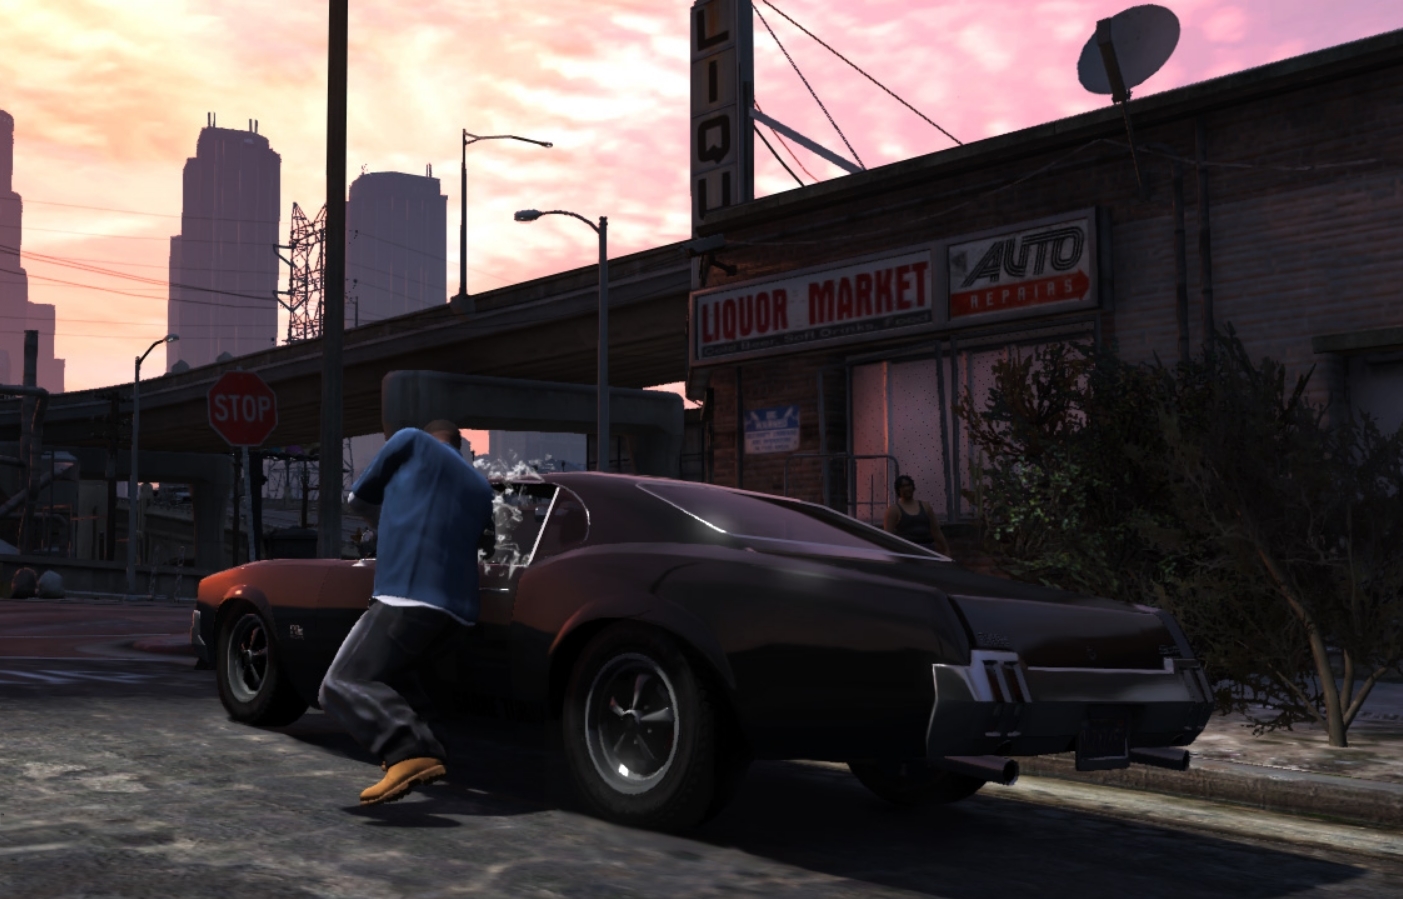 Yhdysvaltalaispoliitikko haluaa kieltää Grand Theft Auto